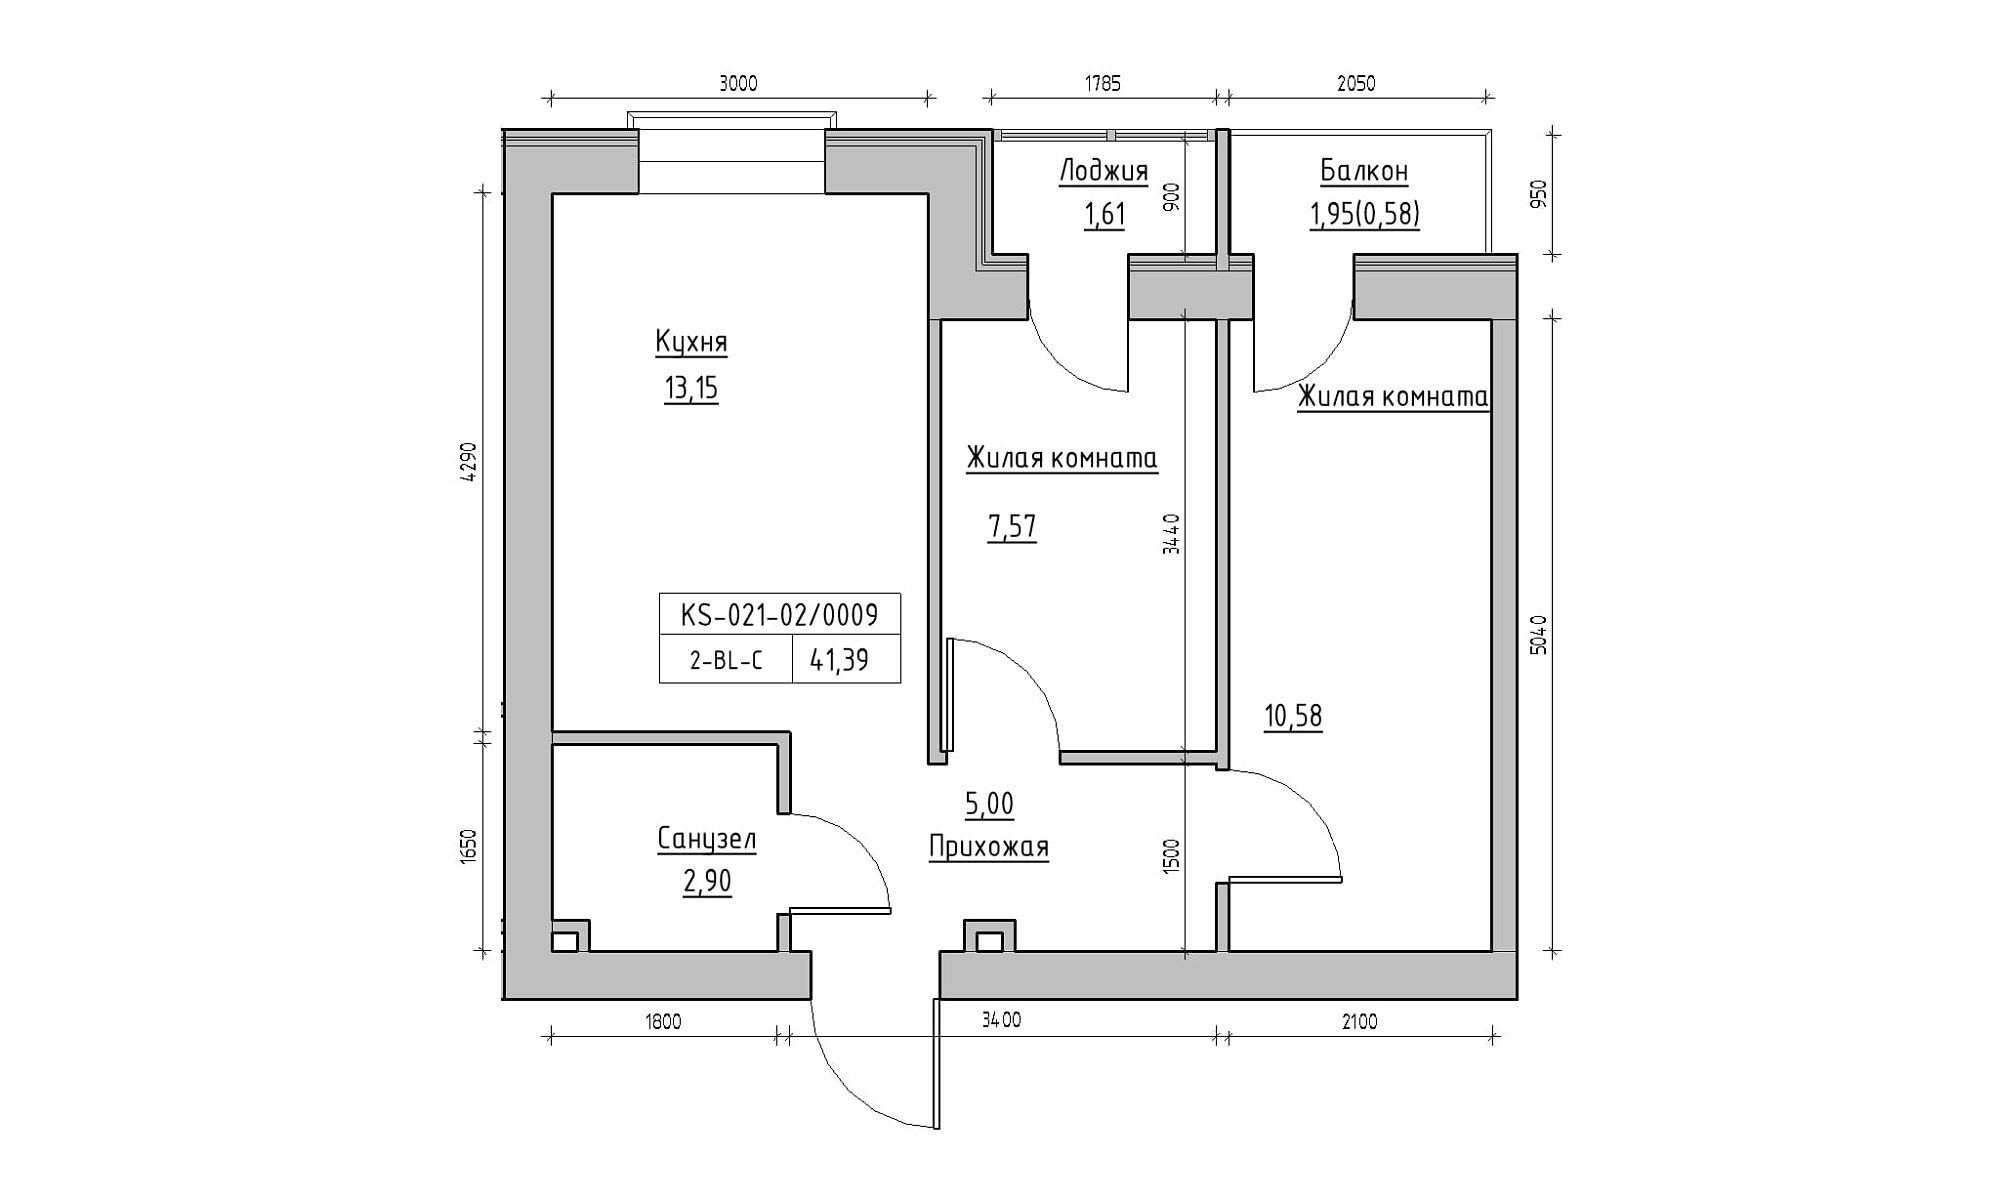 Планування 2-к квартира площею 41.39м2, KS-021-02/0009.